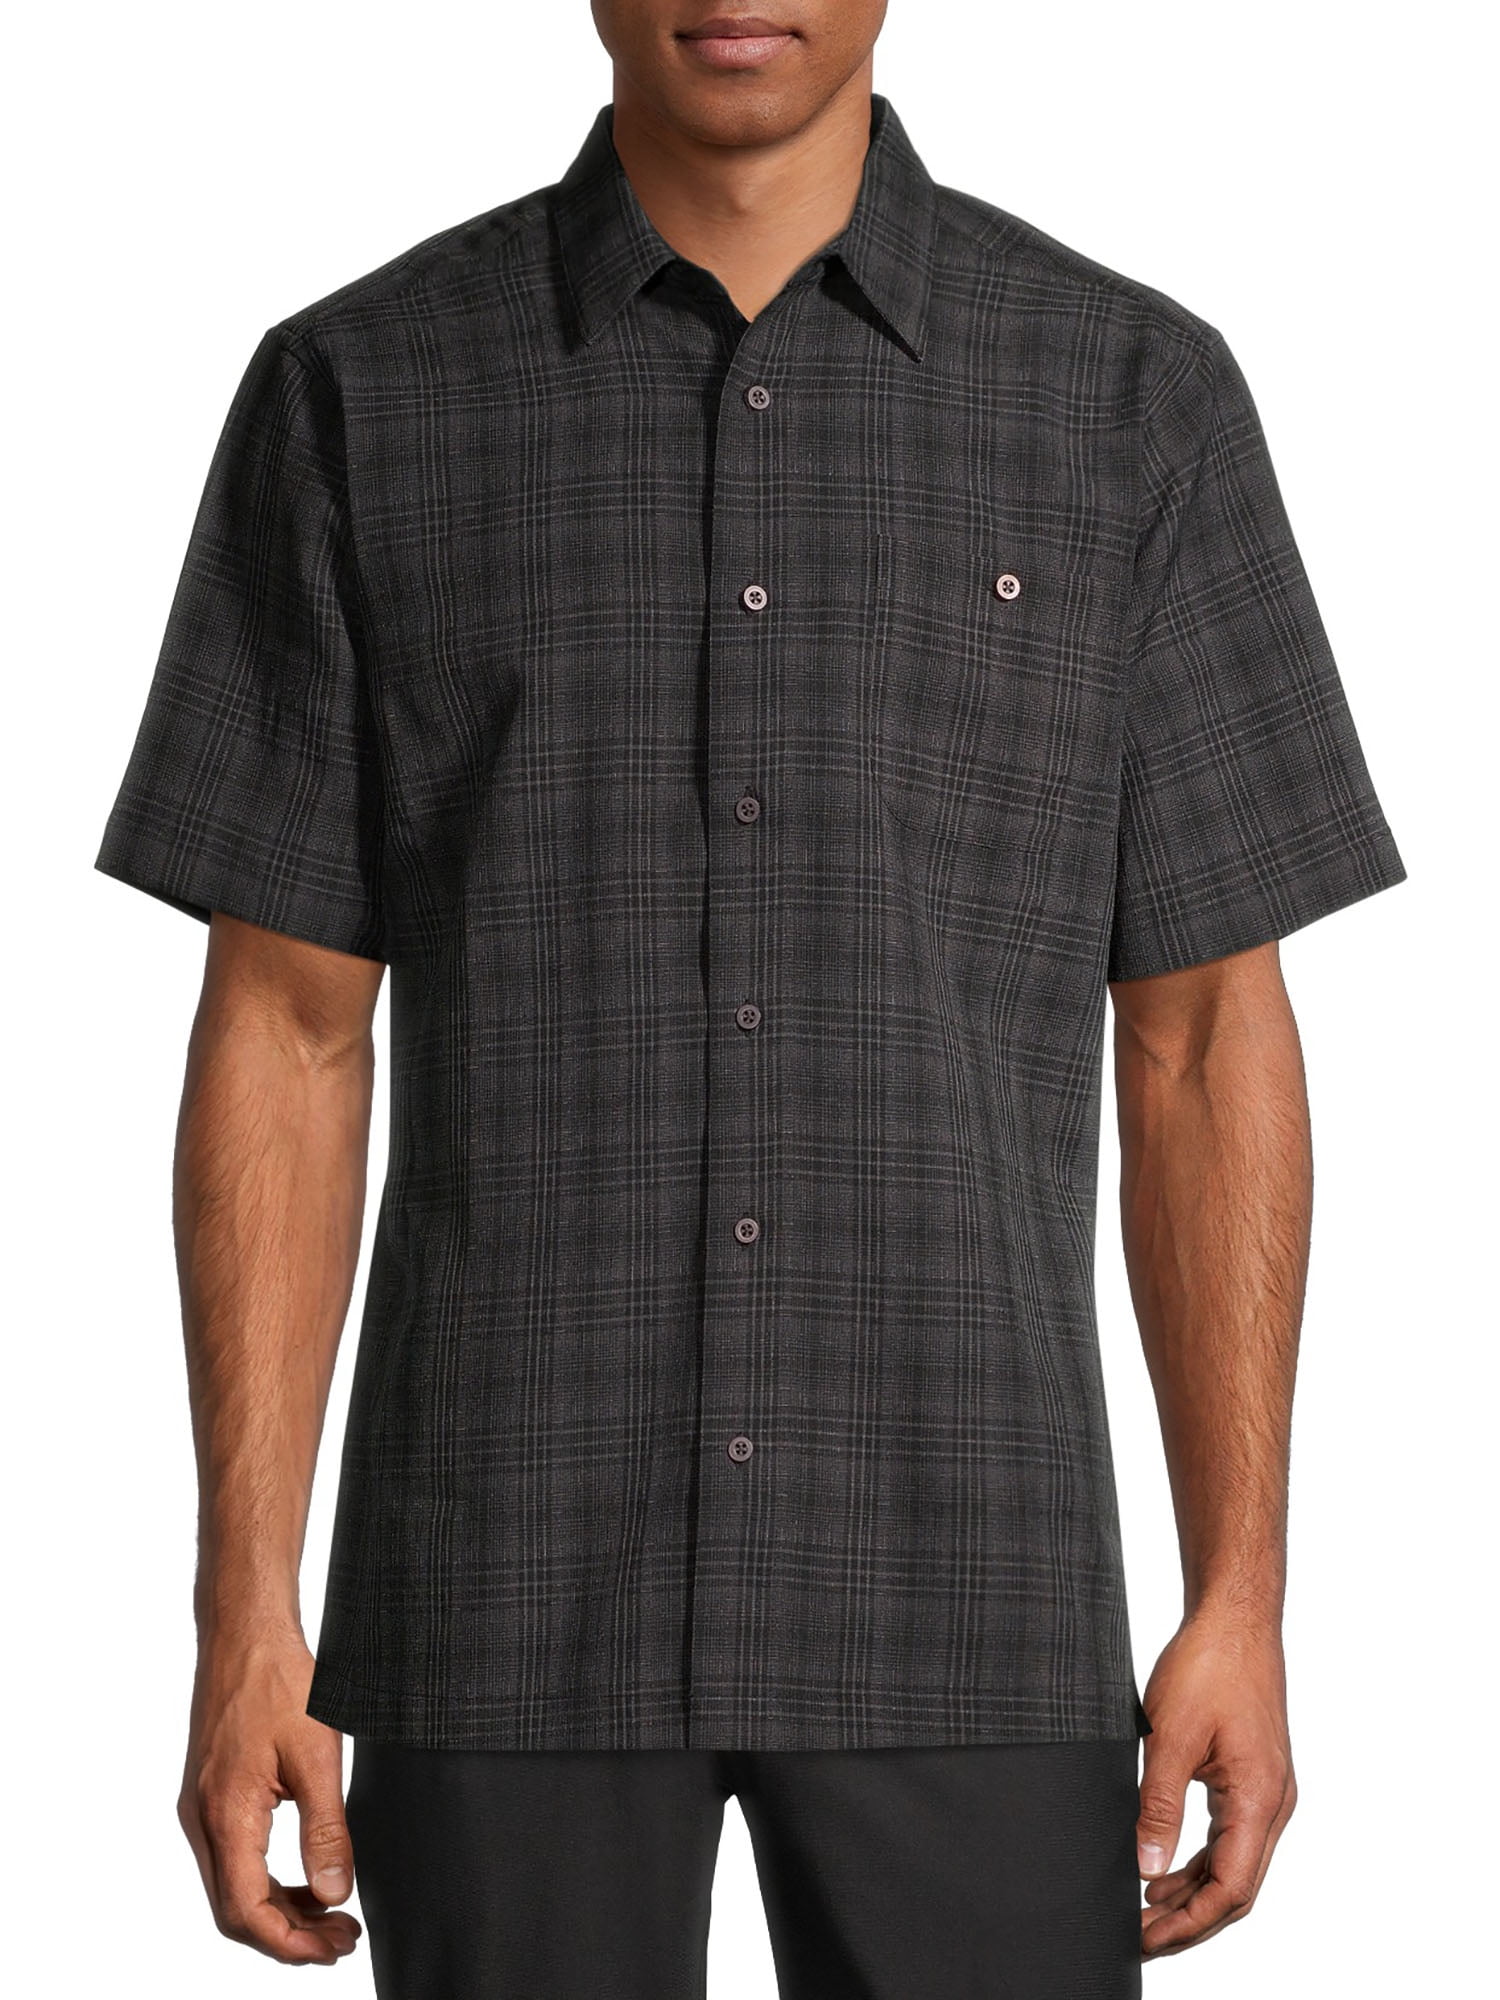 George Men's and Big Men's Microfiber Shirt, up to 5XL - Walmart.com